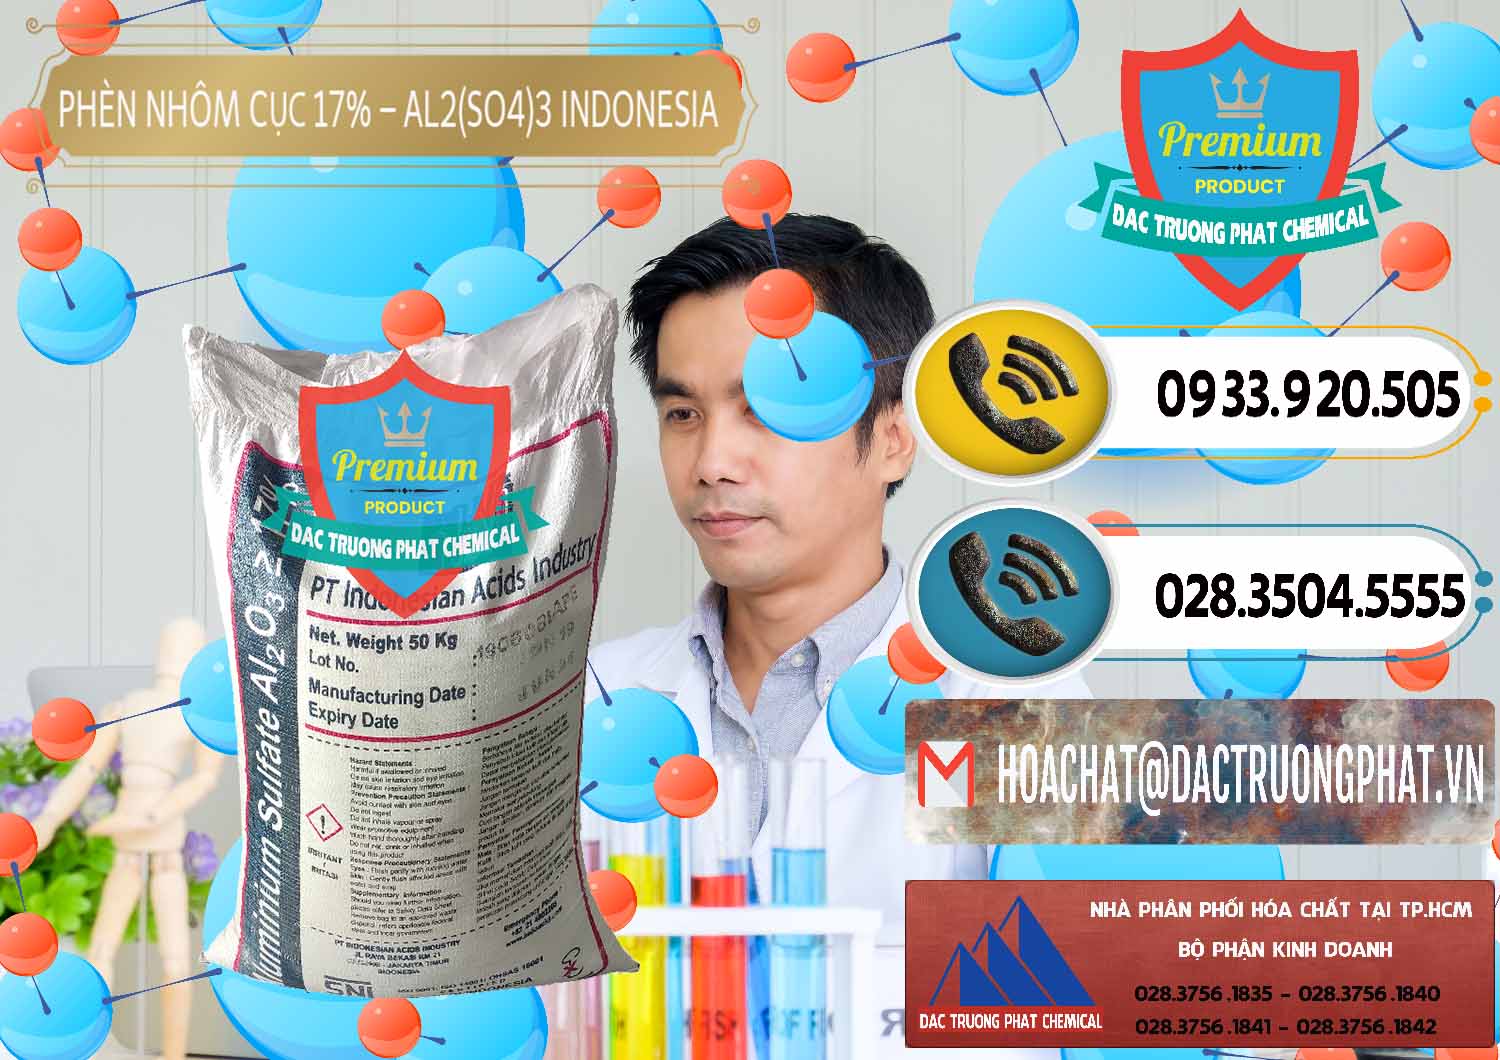 Cty bán _ cung cấp Phèn Nhôm Cục - Al2(SO4)3 17% bao 50kg Indonesia - 0113 - Nơi cung cấp - phân phối hóa chất tại TP.HCM - hoachatdetnhuom.vn